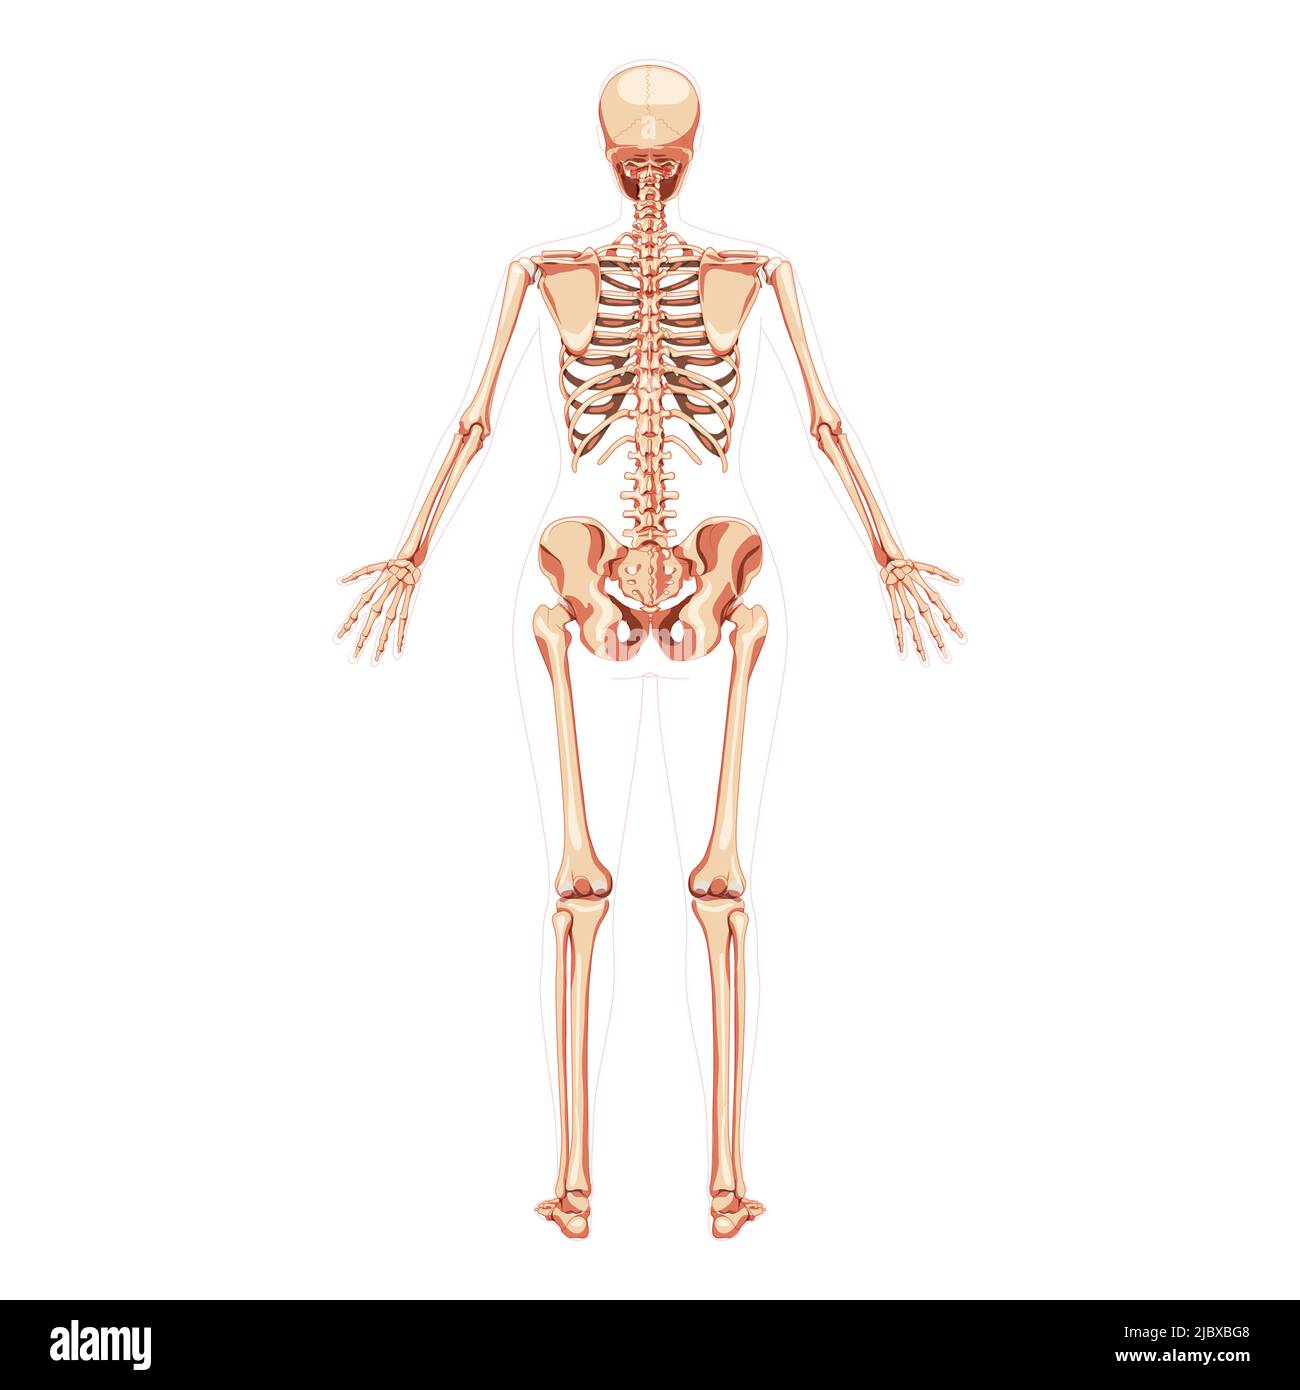 Donne Skeleton corpo umano ossa concetto femminile con mani aperte posizione. Vista posteriore della donna dorsale. 3D immagine vettoriale realistica anatomicamente corretta della ragazza piatta di anatomia isolata su bianco Illustrazione Vettoriale